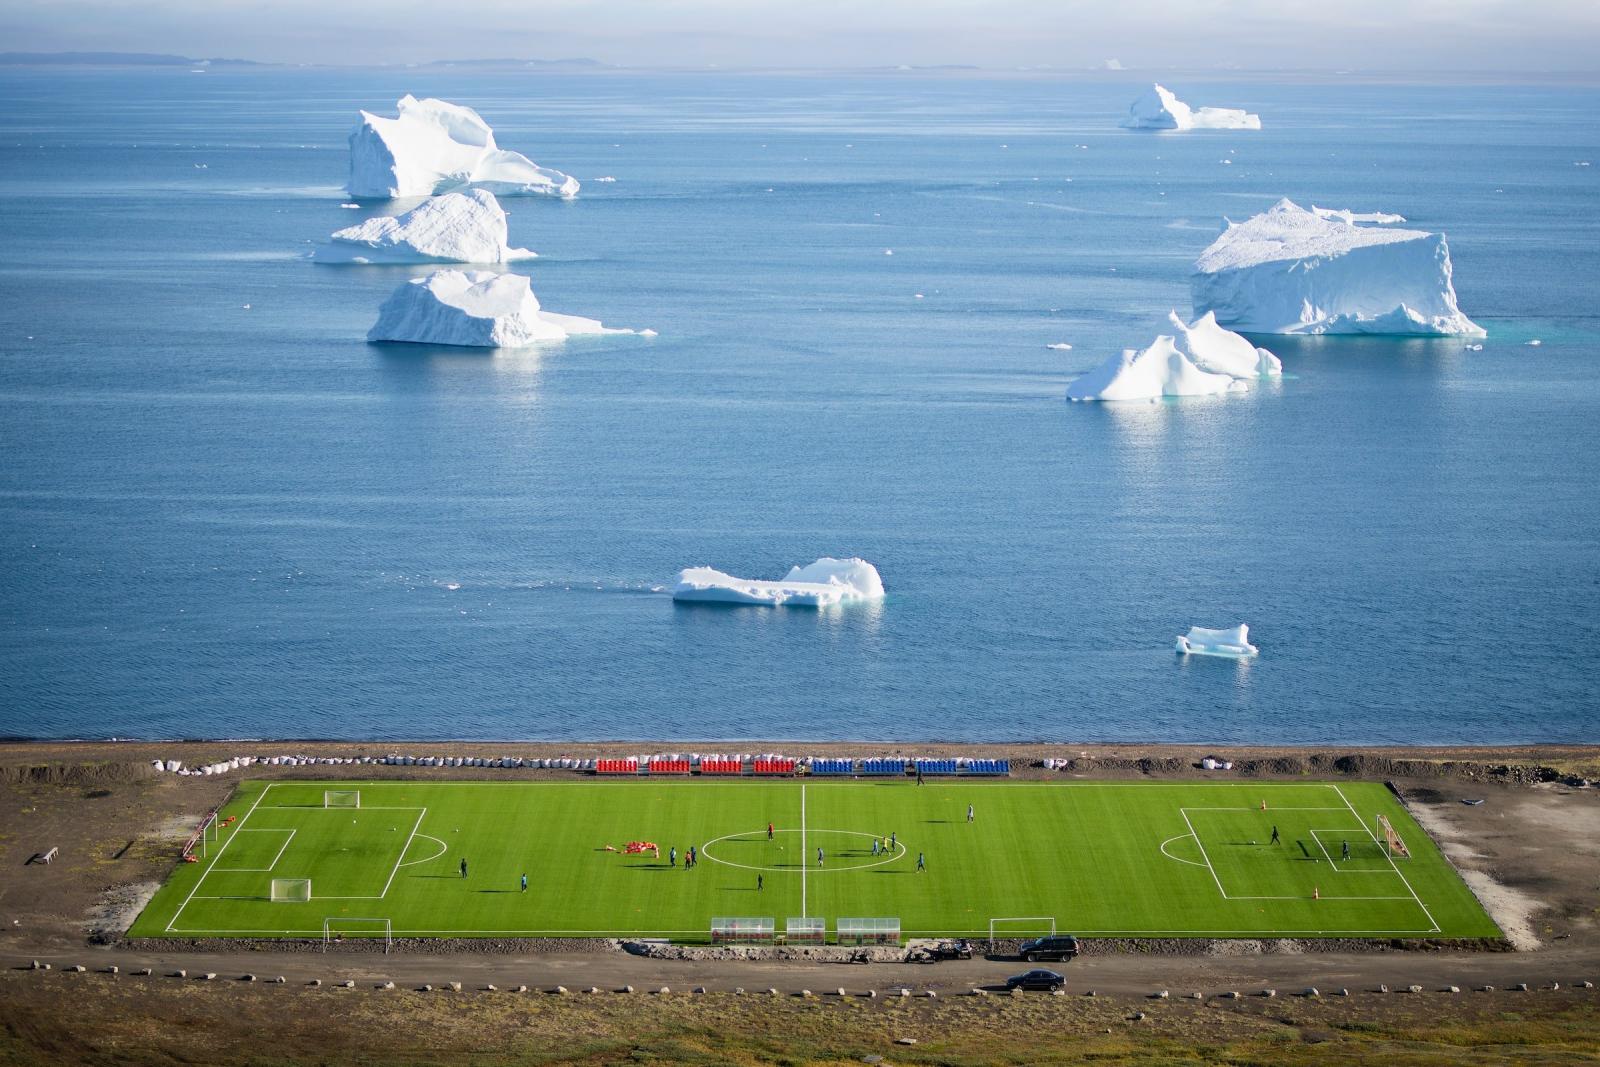 Football Field Aerial, Qeqertarsuaq. Aningaaq Rosing Carlsen - Visit Greenland